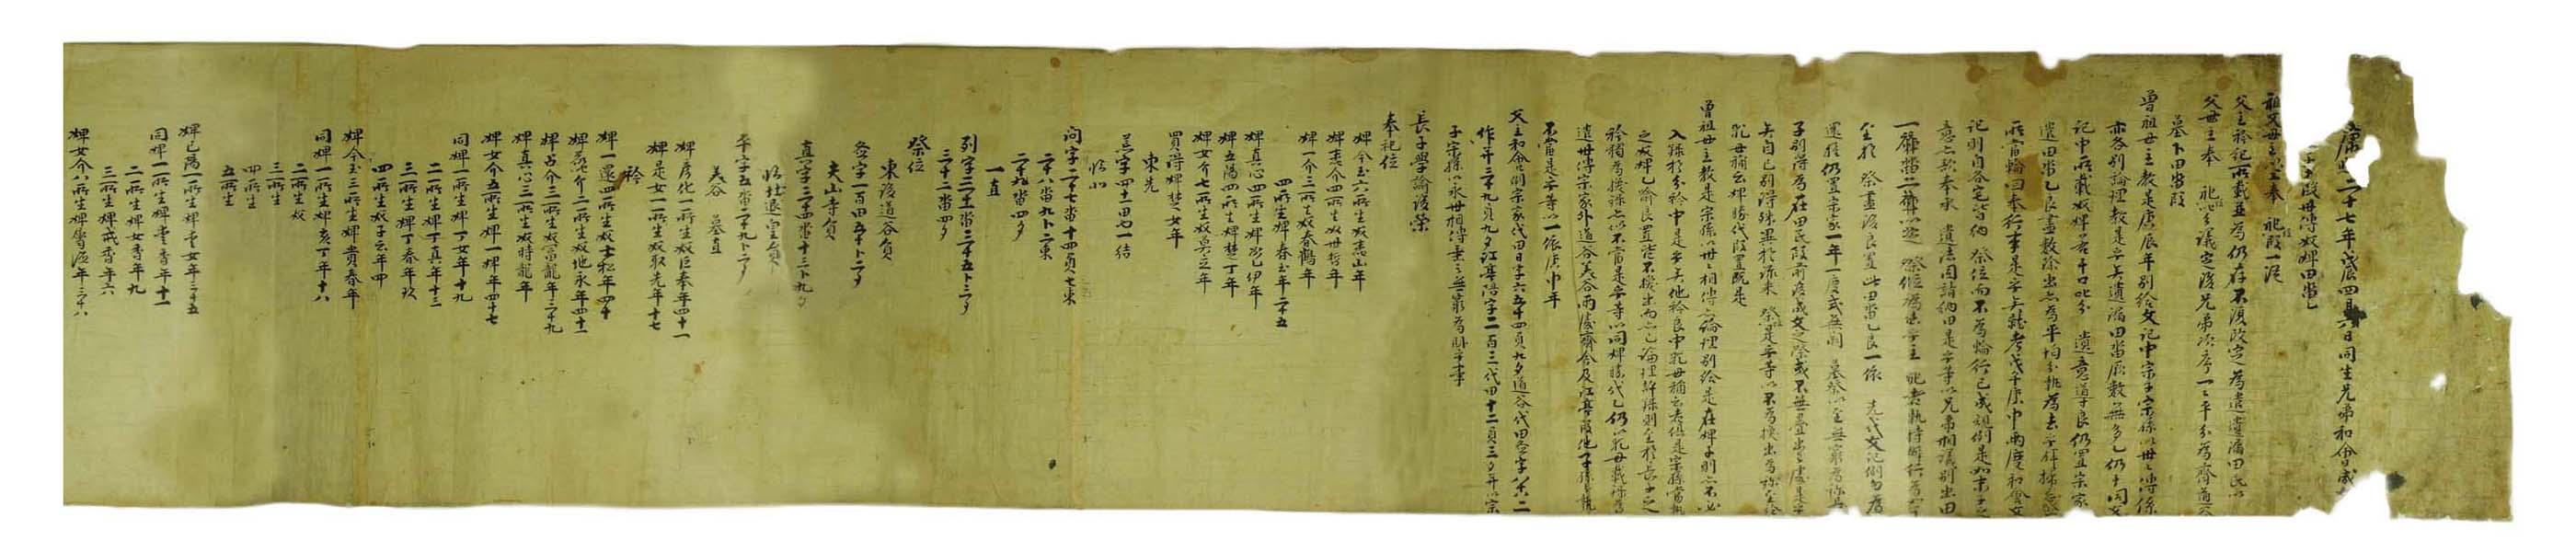 1771년 통례원 인의 권모가 득창에게 제위조로 논 4두락의 재산을 별급한 문서. 